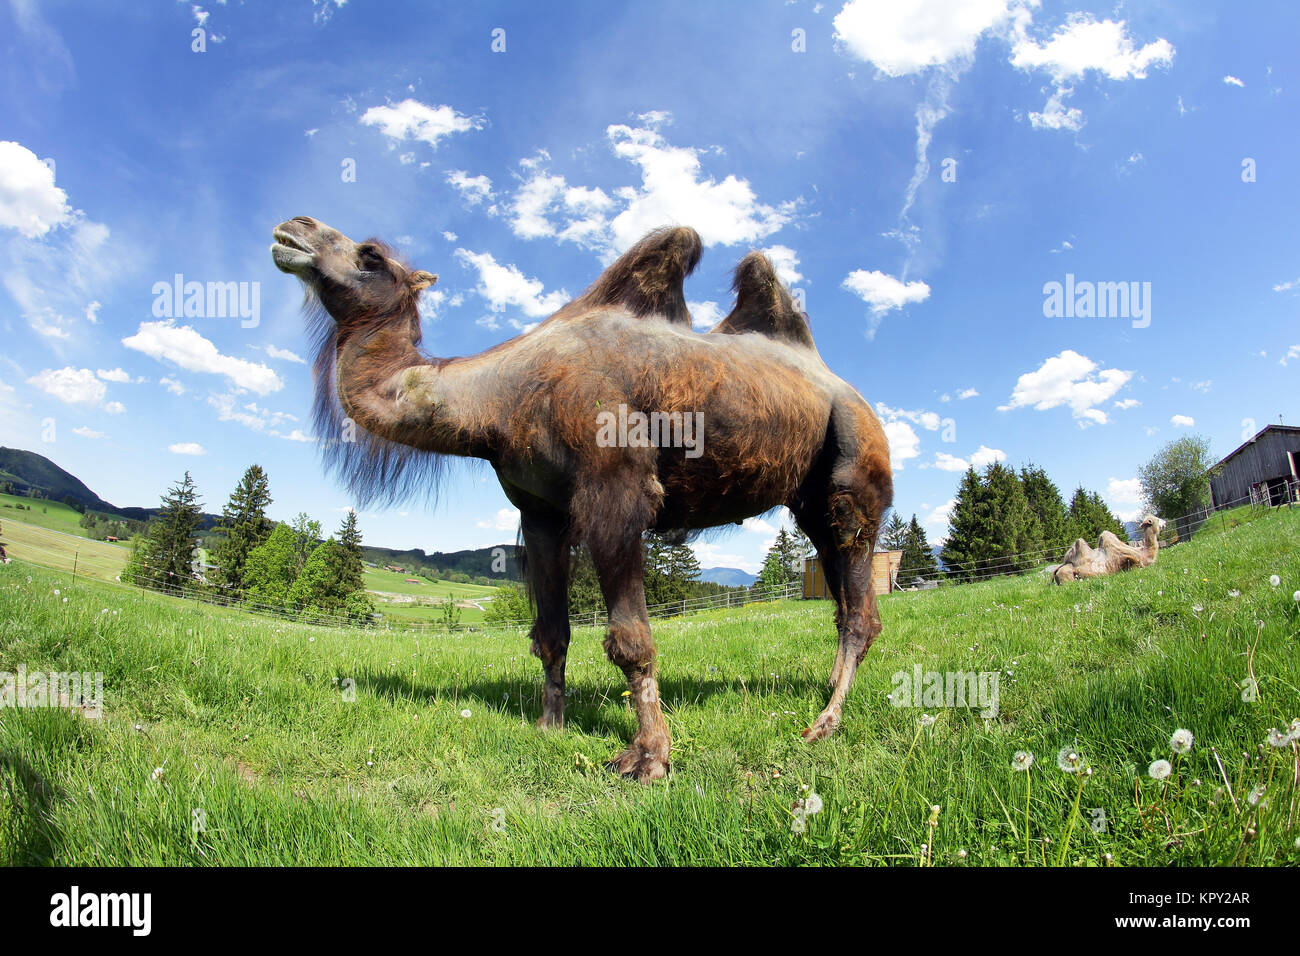 Una femmina trampler,un due-humped camel in Baviera (allgÃ¤u) Foto Stock